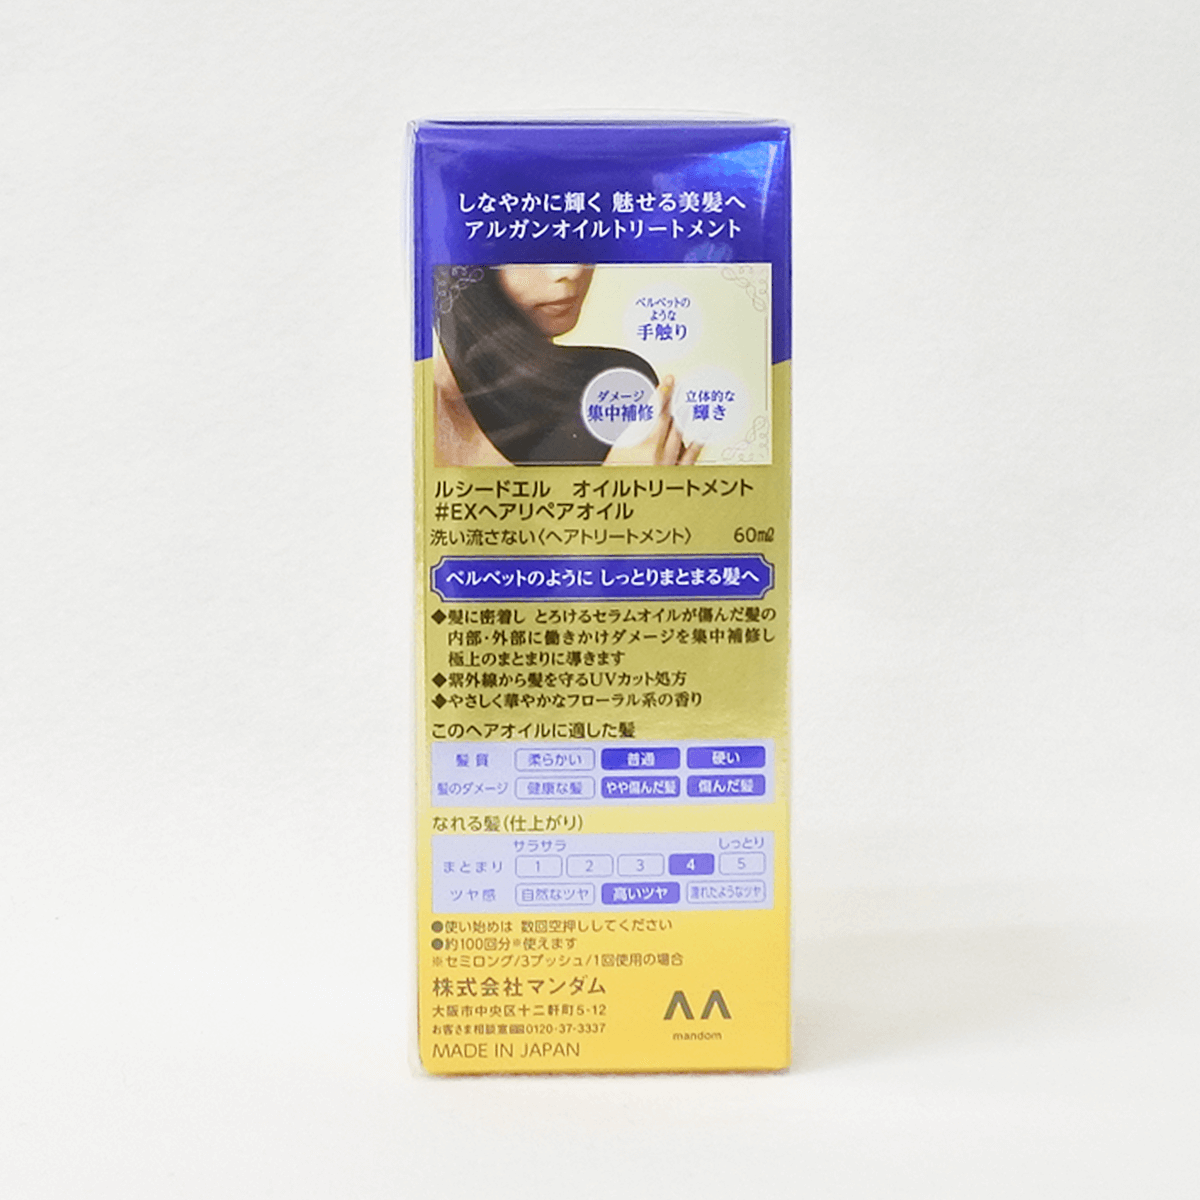 LUCIDO-L 樂絲朵-L 摩洛哥護髮精華油(修護型)
適合燙染受損髮質 60ml